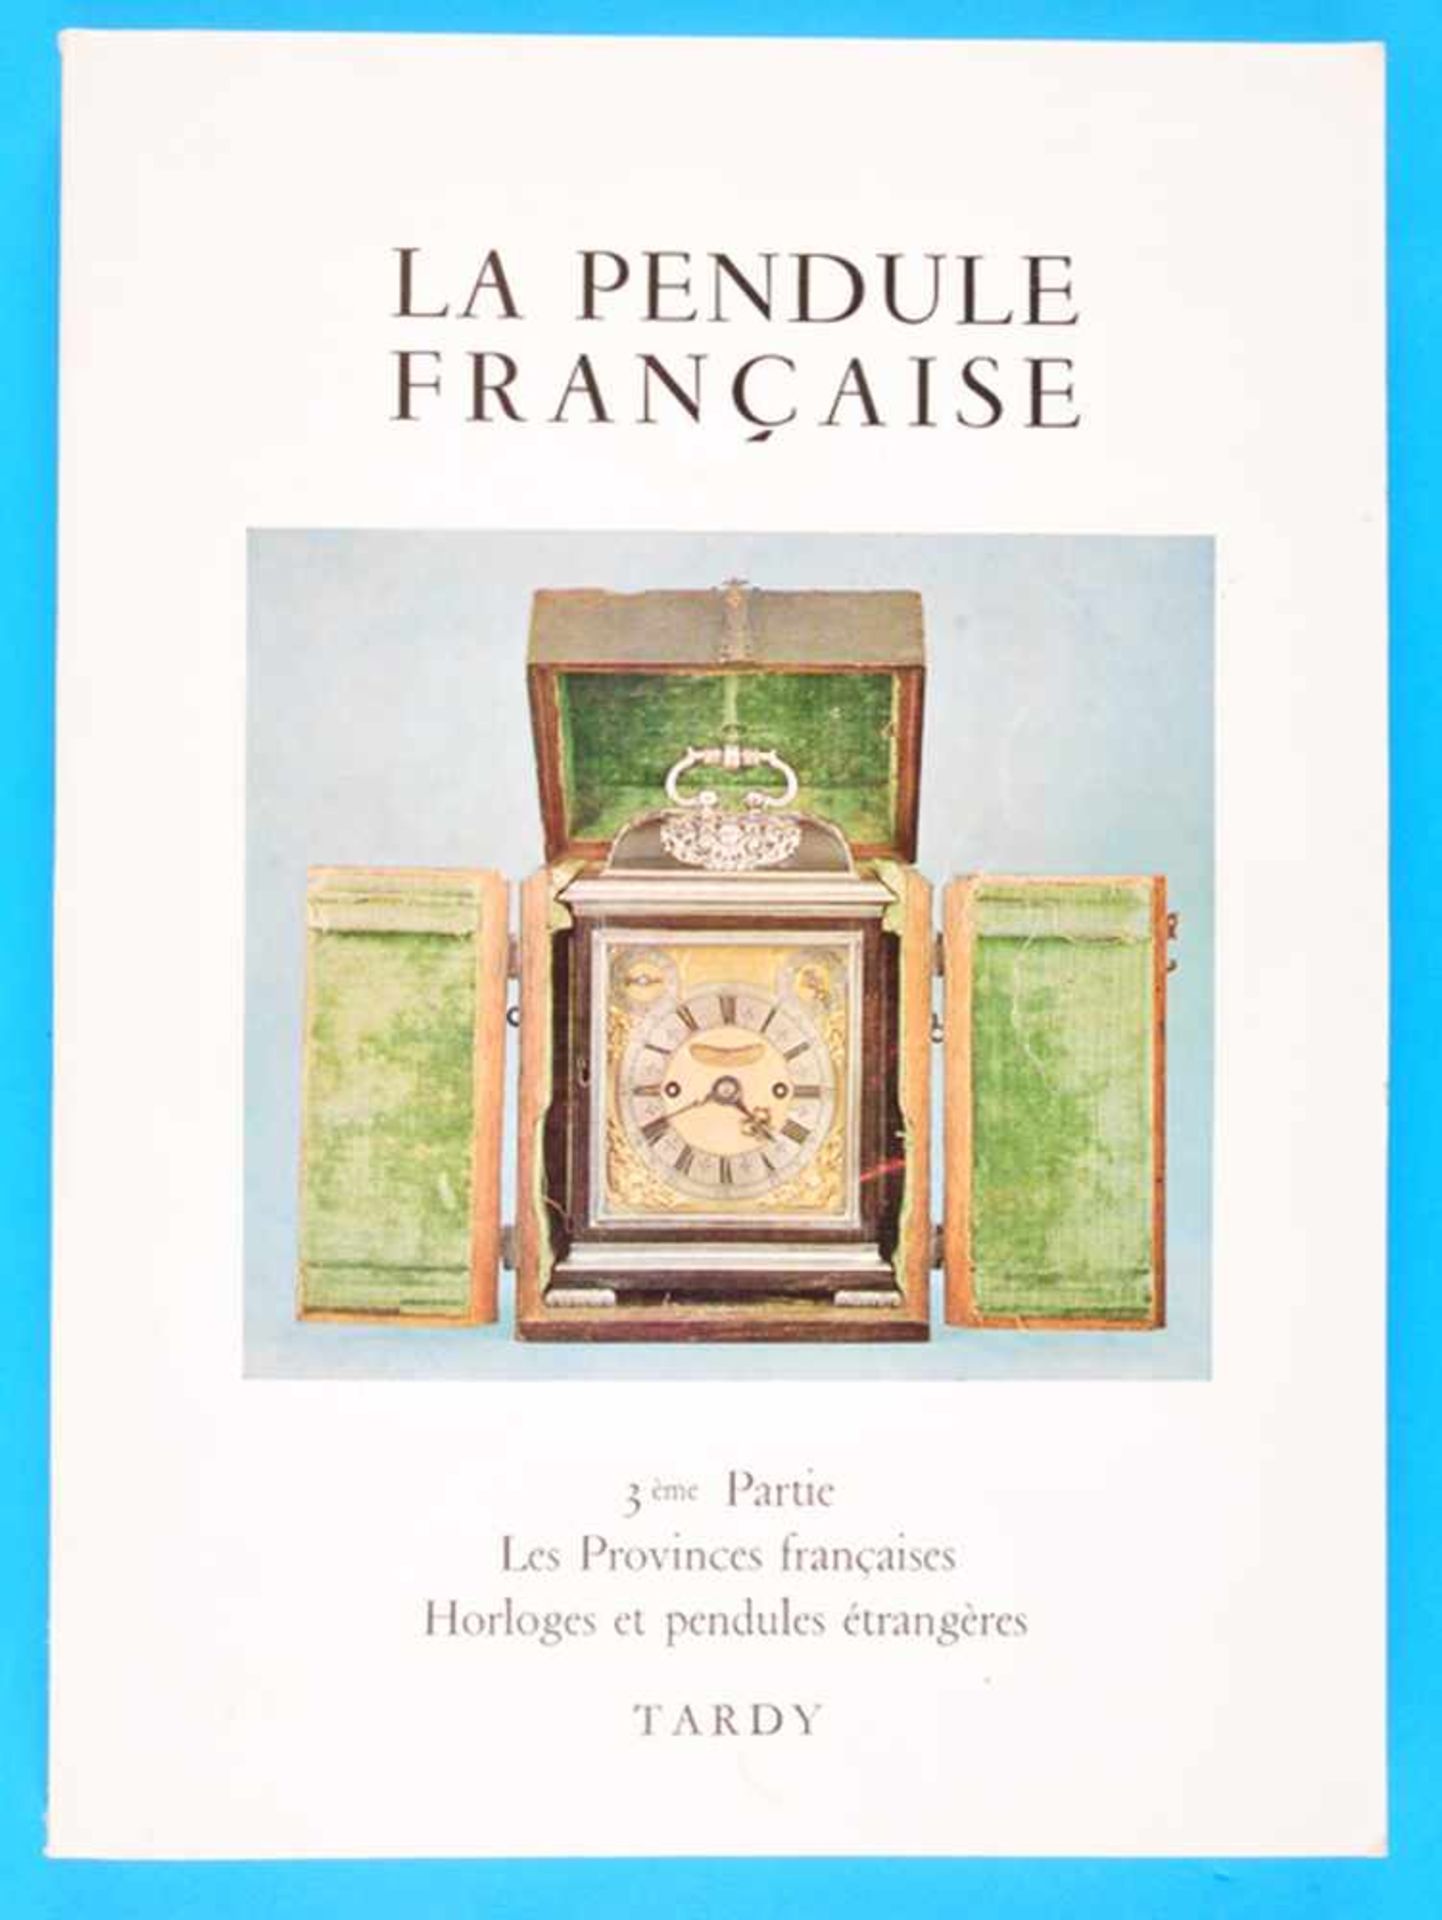 Tardy, La Pendule Francaise, Band 3Tardy, La Pendule Francaise, Band 3, 1974, Les Provinces